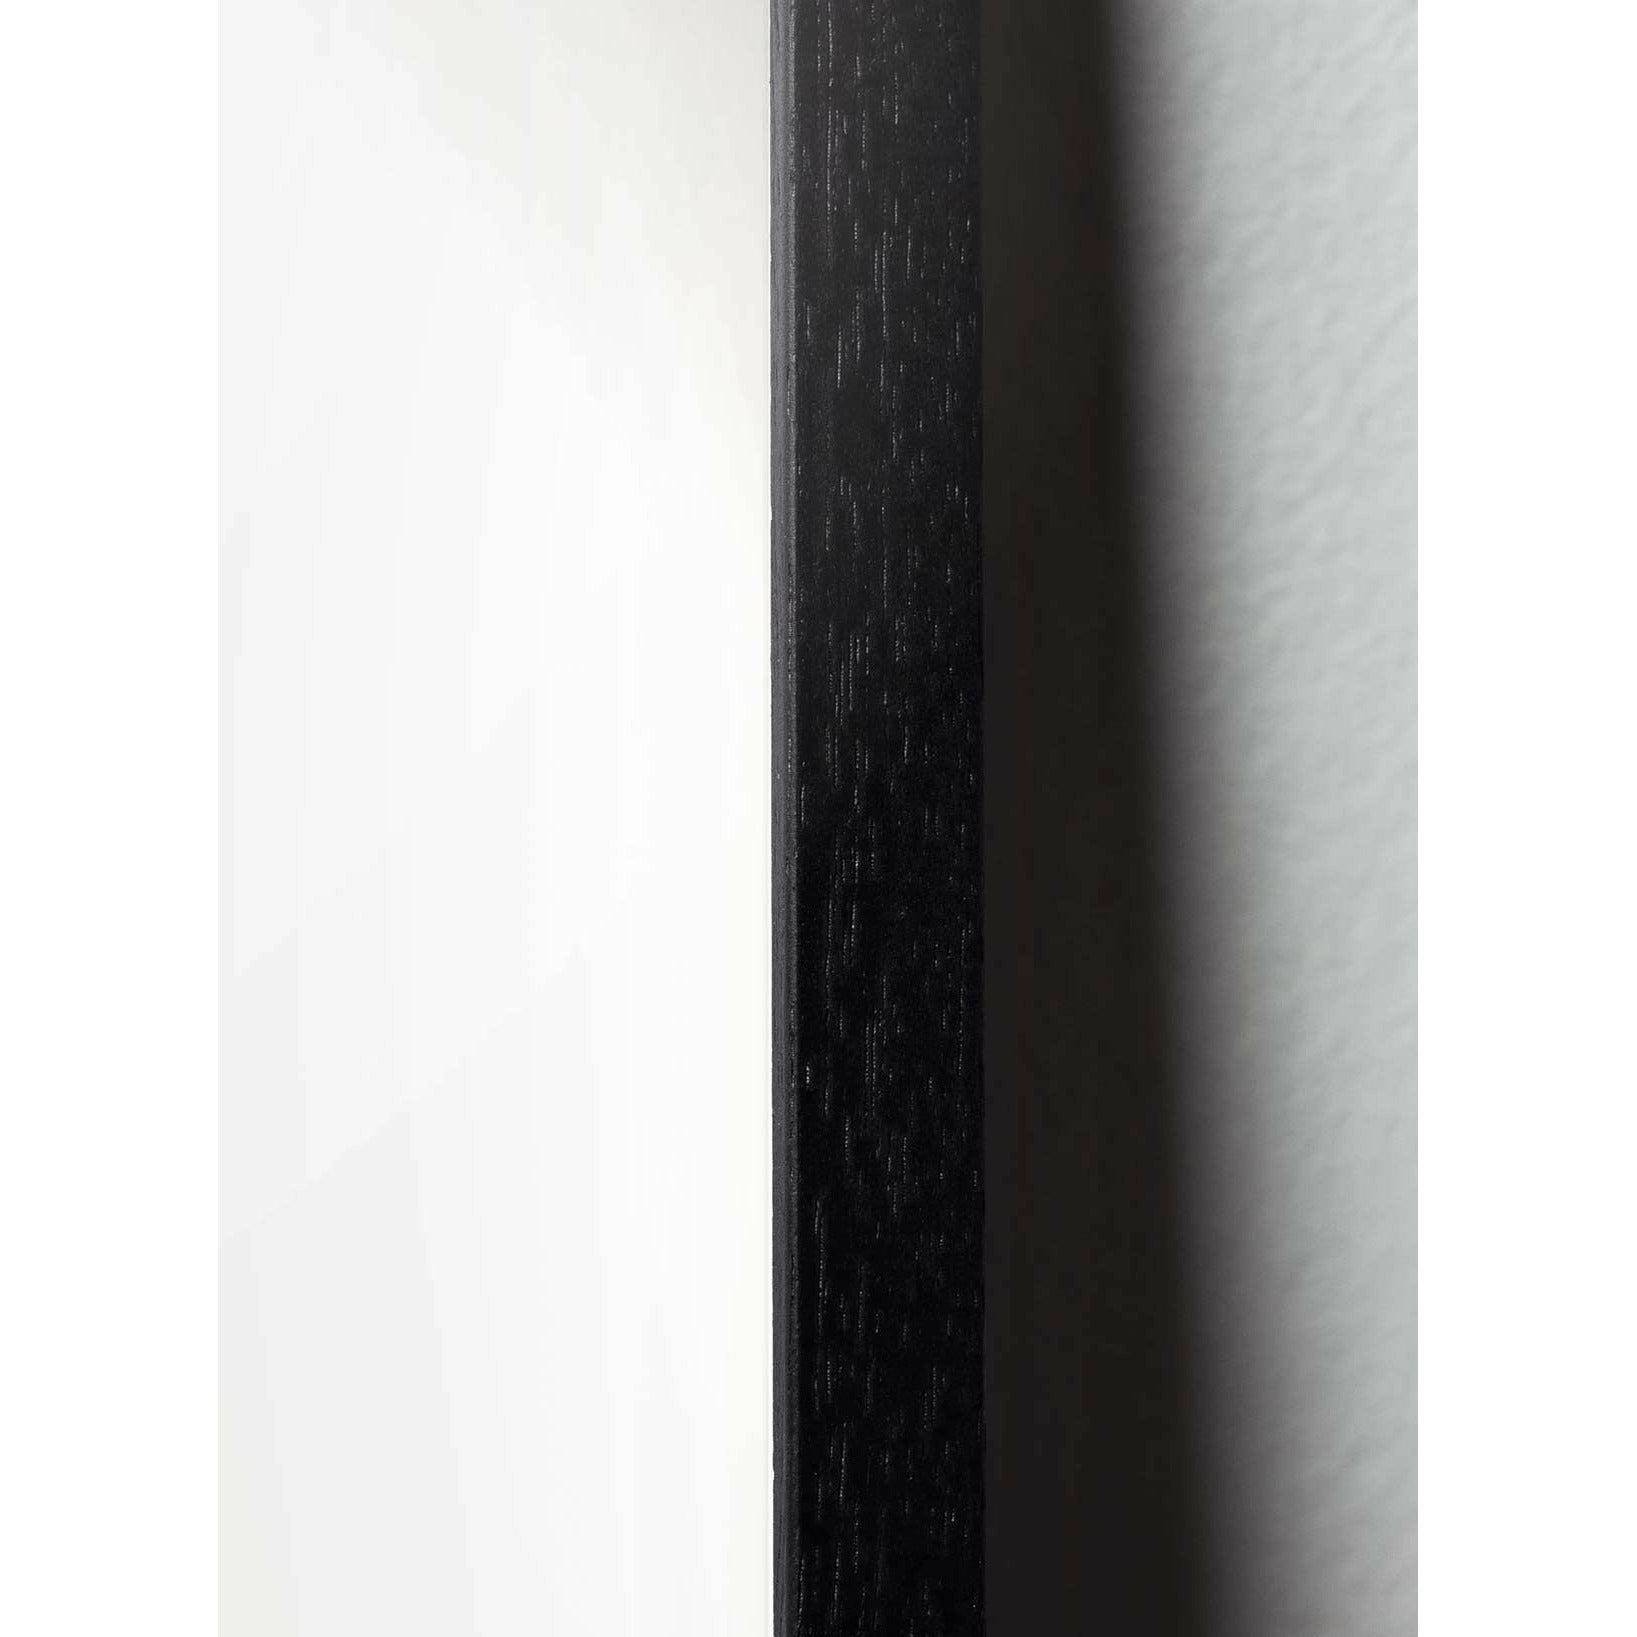 Póster de línea de cono de pino de creación, marco en madera lacada negra A5, fondo blanco